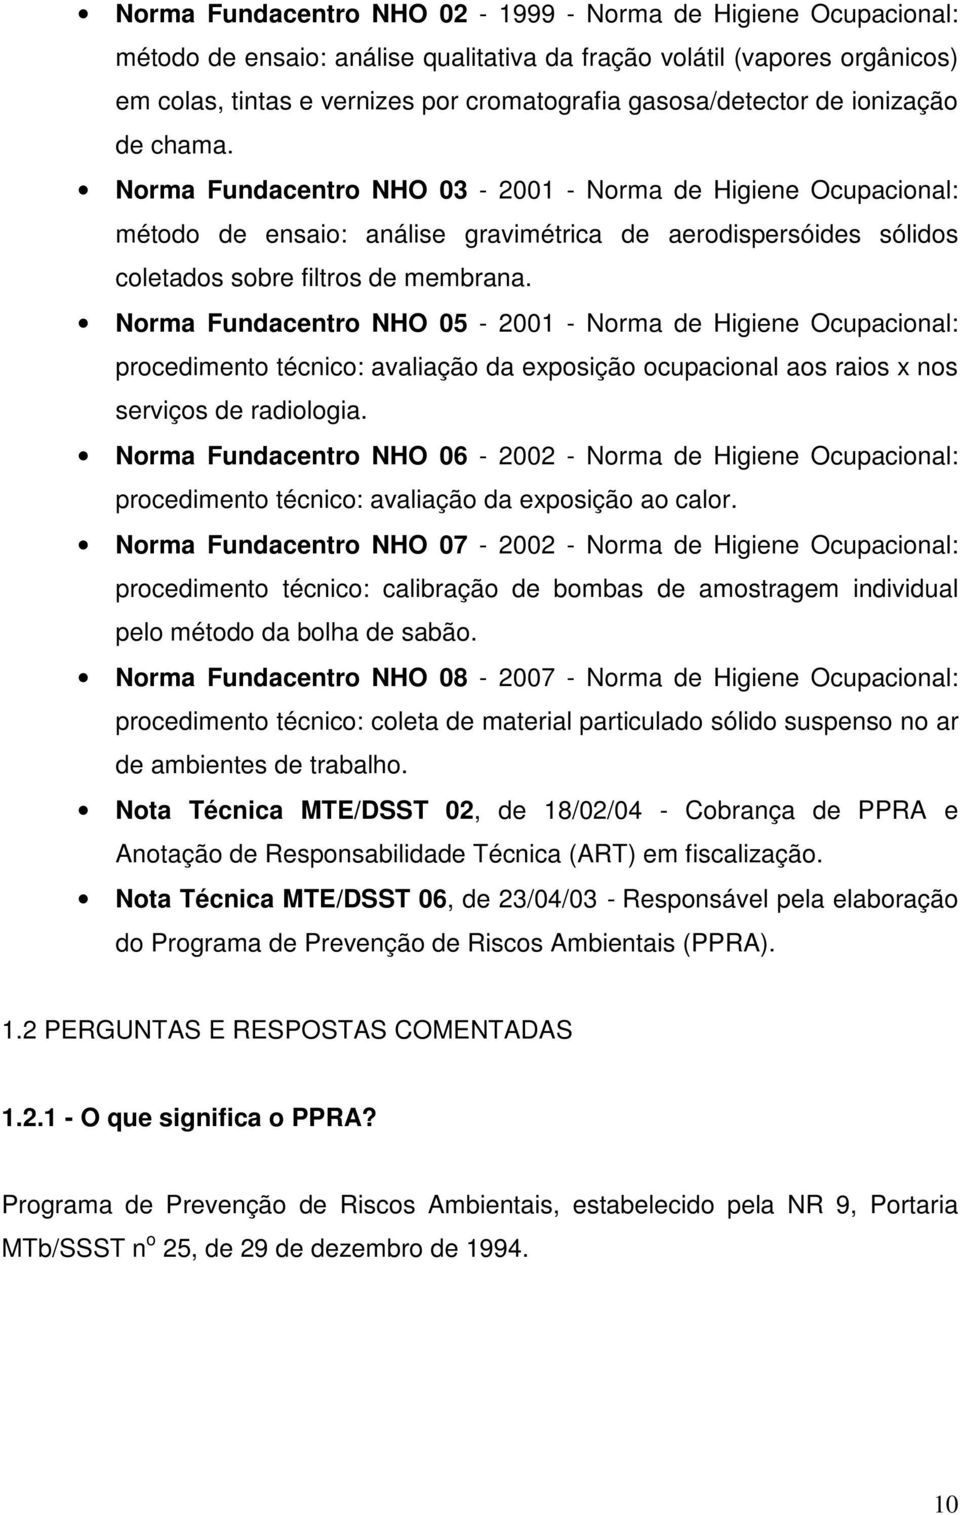 Norma Fundacentro NHO 05-2001 - Norma de Higiene Ocupacional: procedimento técnico: avaliação da exposição ocupacional aos raios x nos serviços de radiologia.